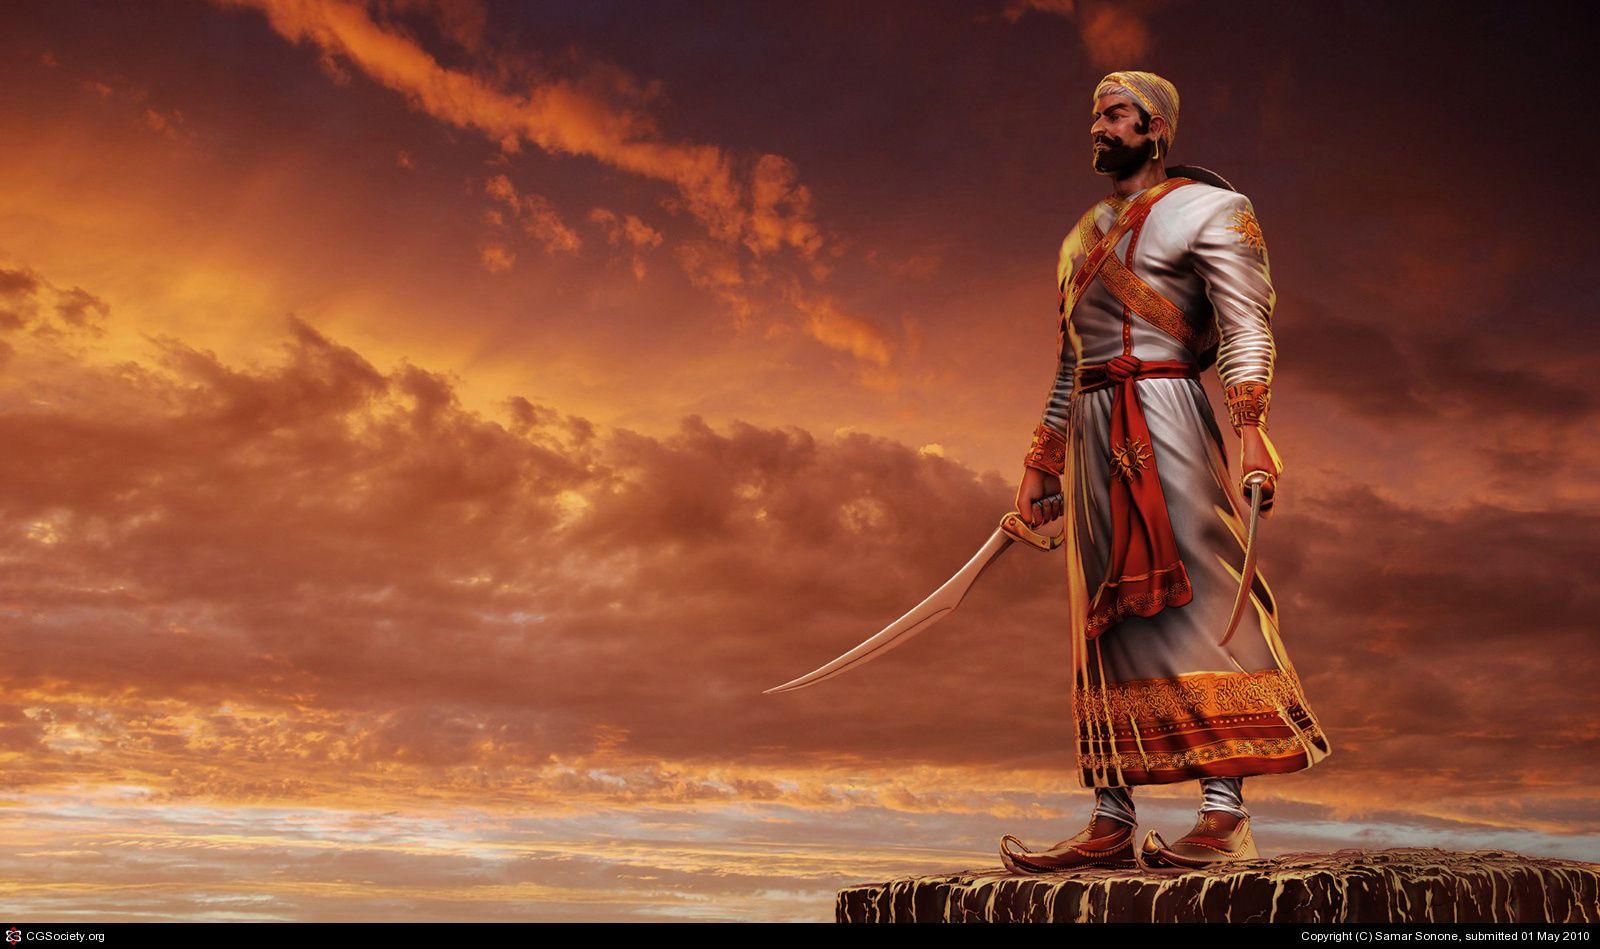 Indian Warrior Wallpapers - Top Free Indian Warrior ...